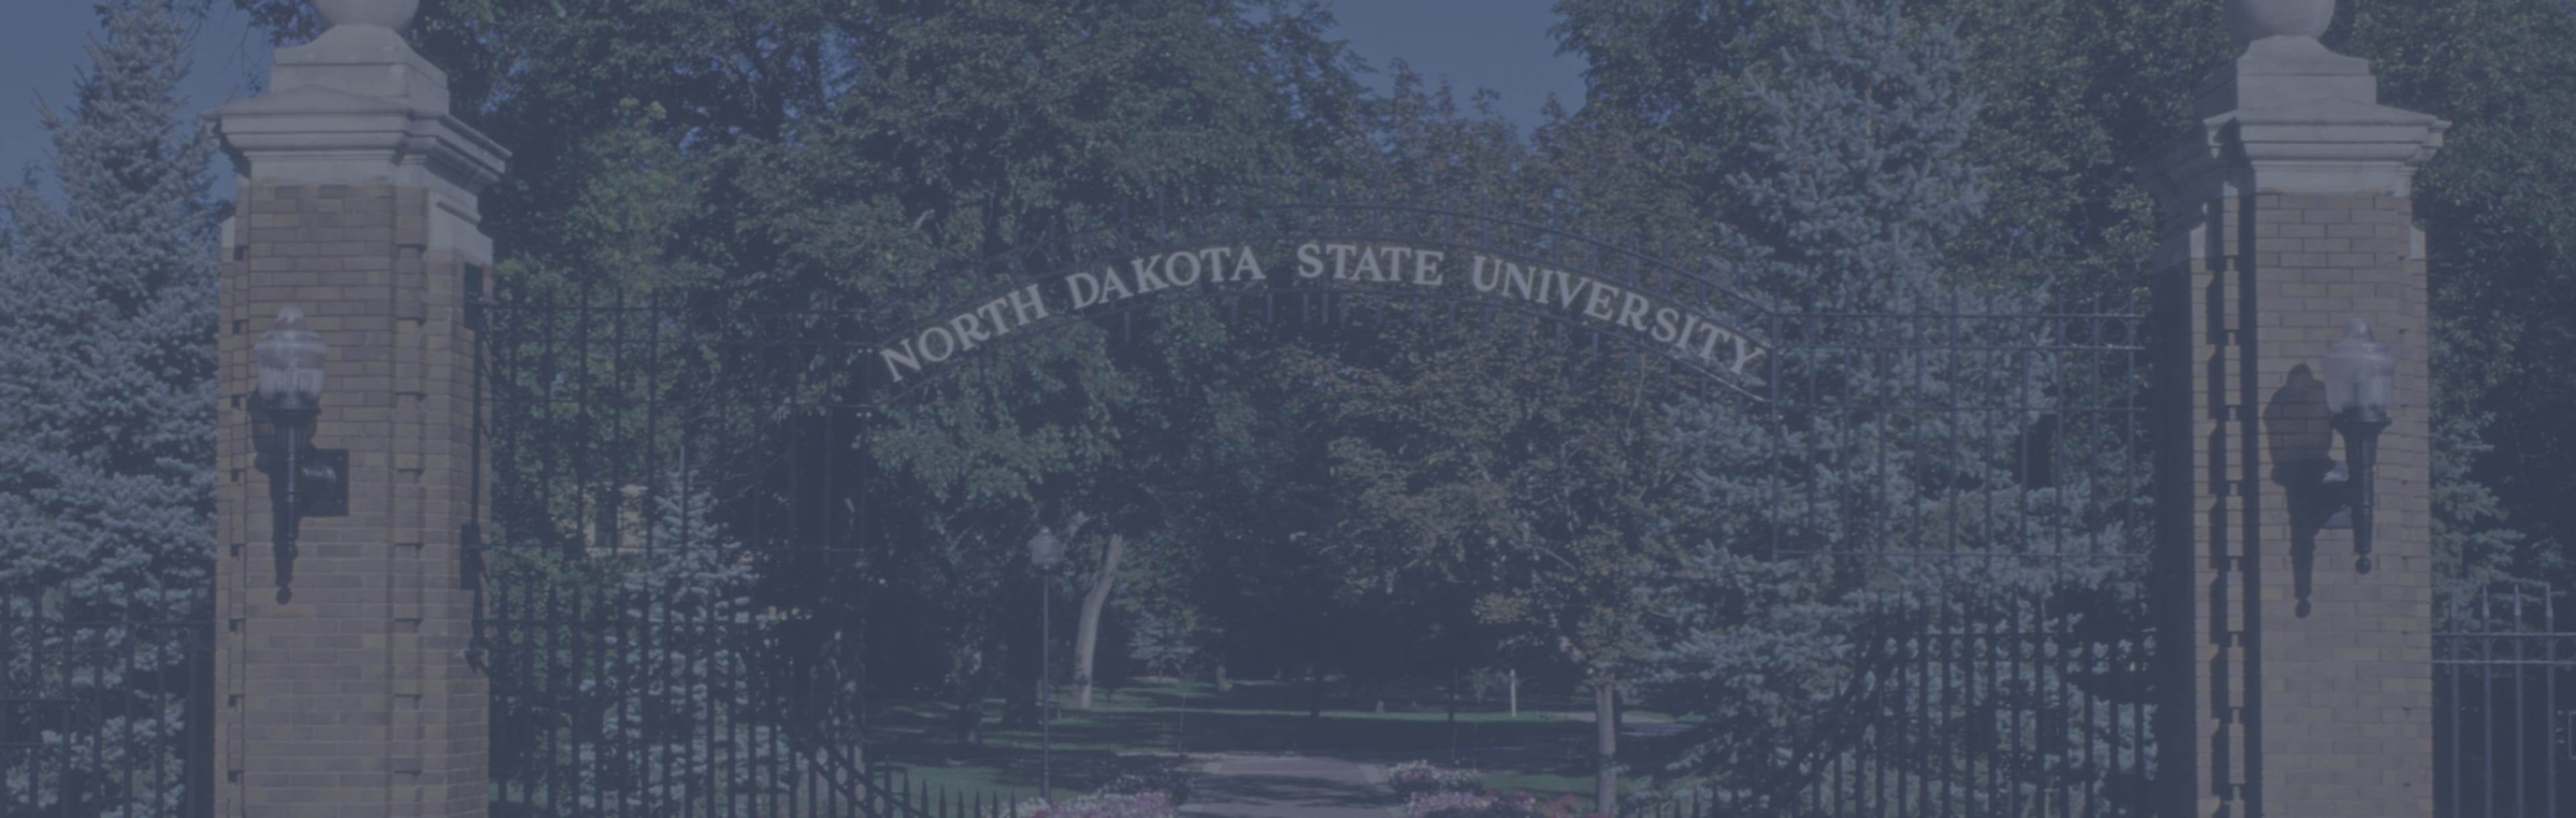 North Dakota State University - Graduate School Doctoraat in biomedische technologie